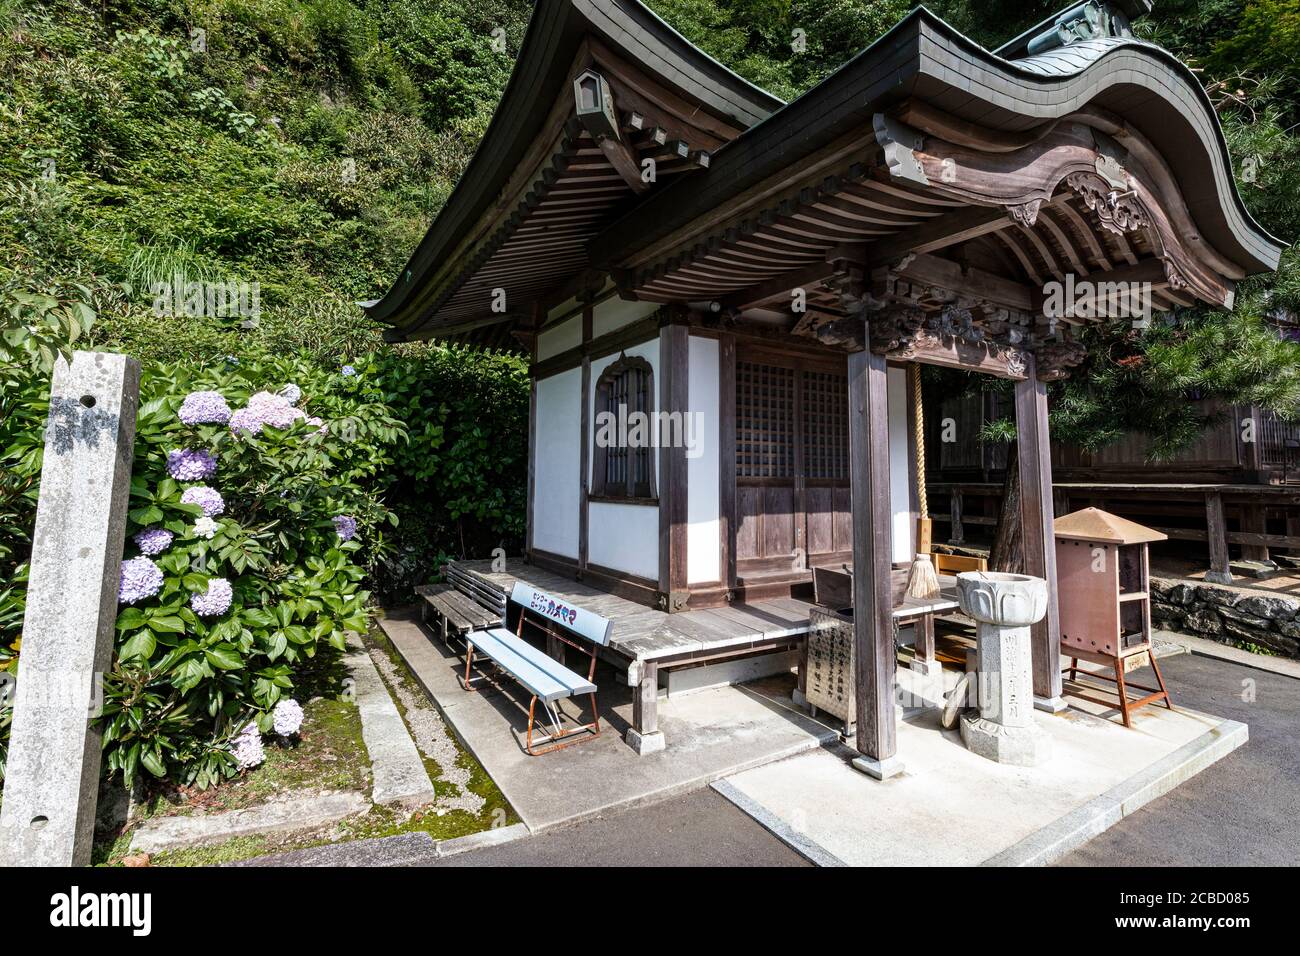 Yokomineji es el templo número 60 en la peregrinación Shikoku. Se considera el templo más difícil de alcanzar en la peregrinación debido a su ubicación Foto de stock